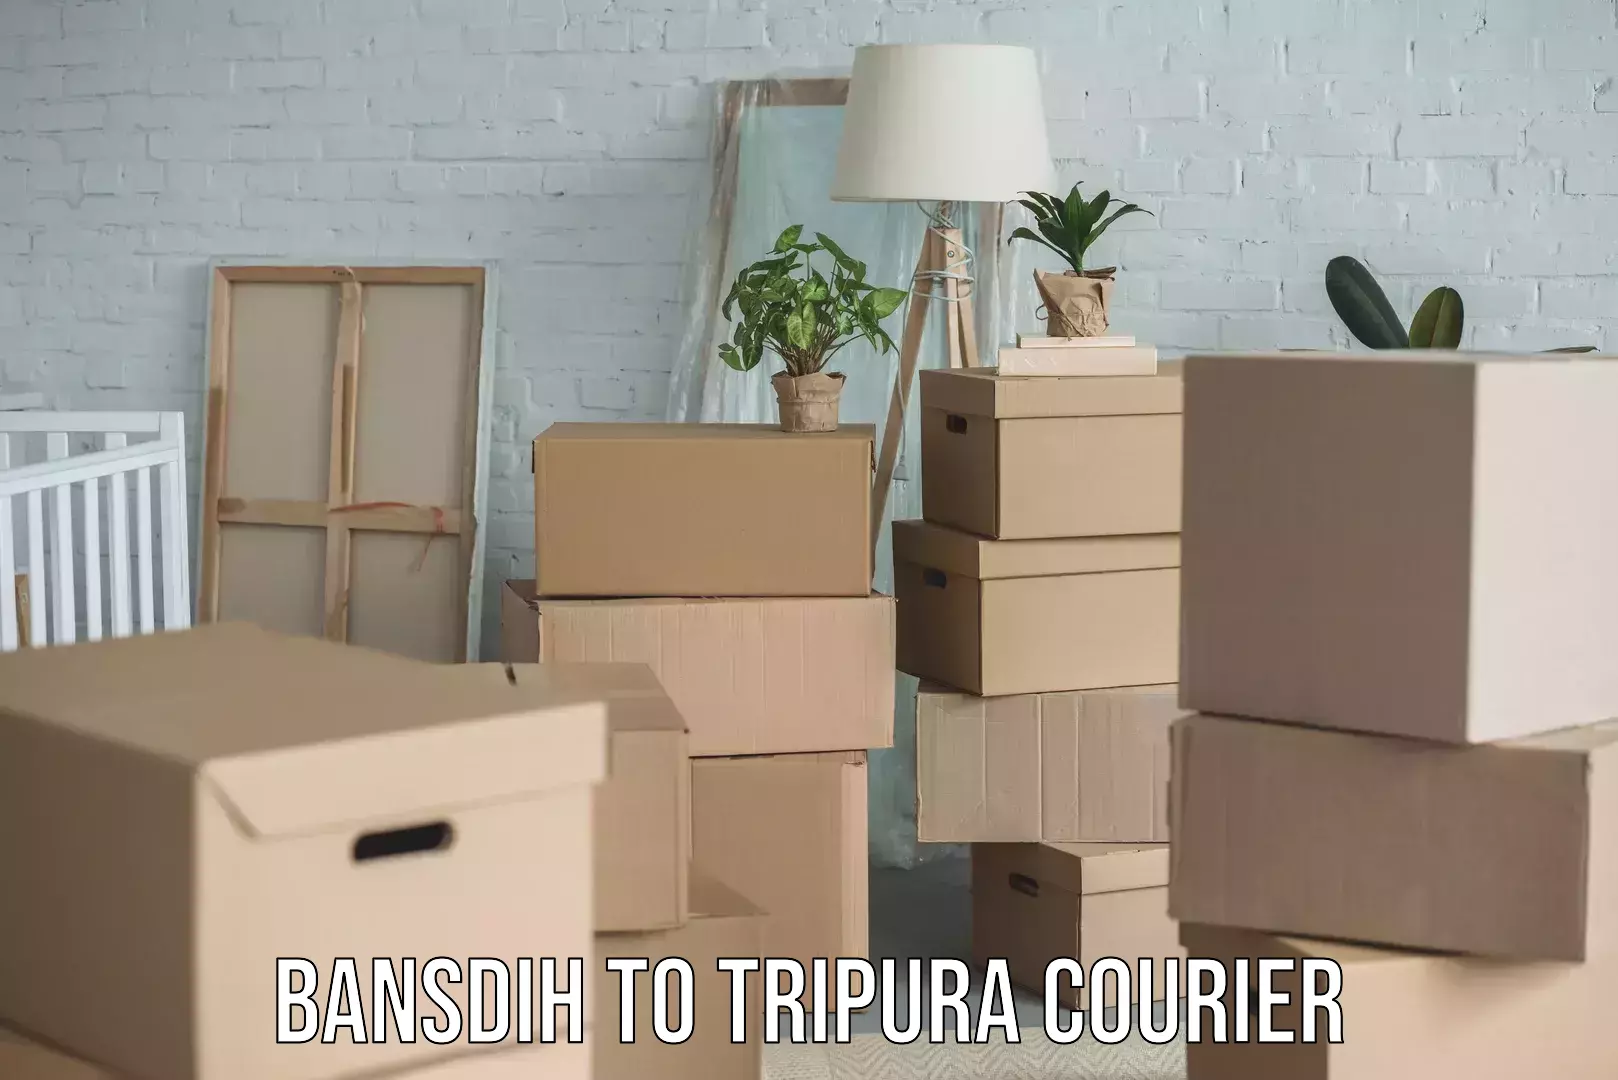 High-capacity shipping options Bansdih to Tripura